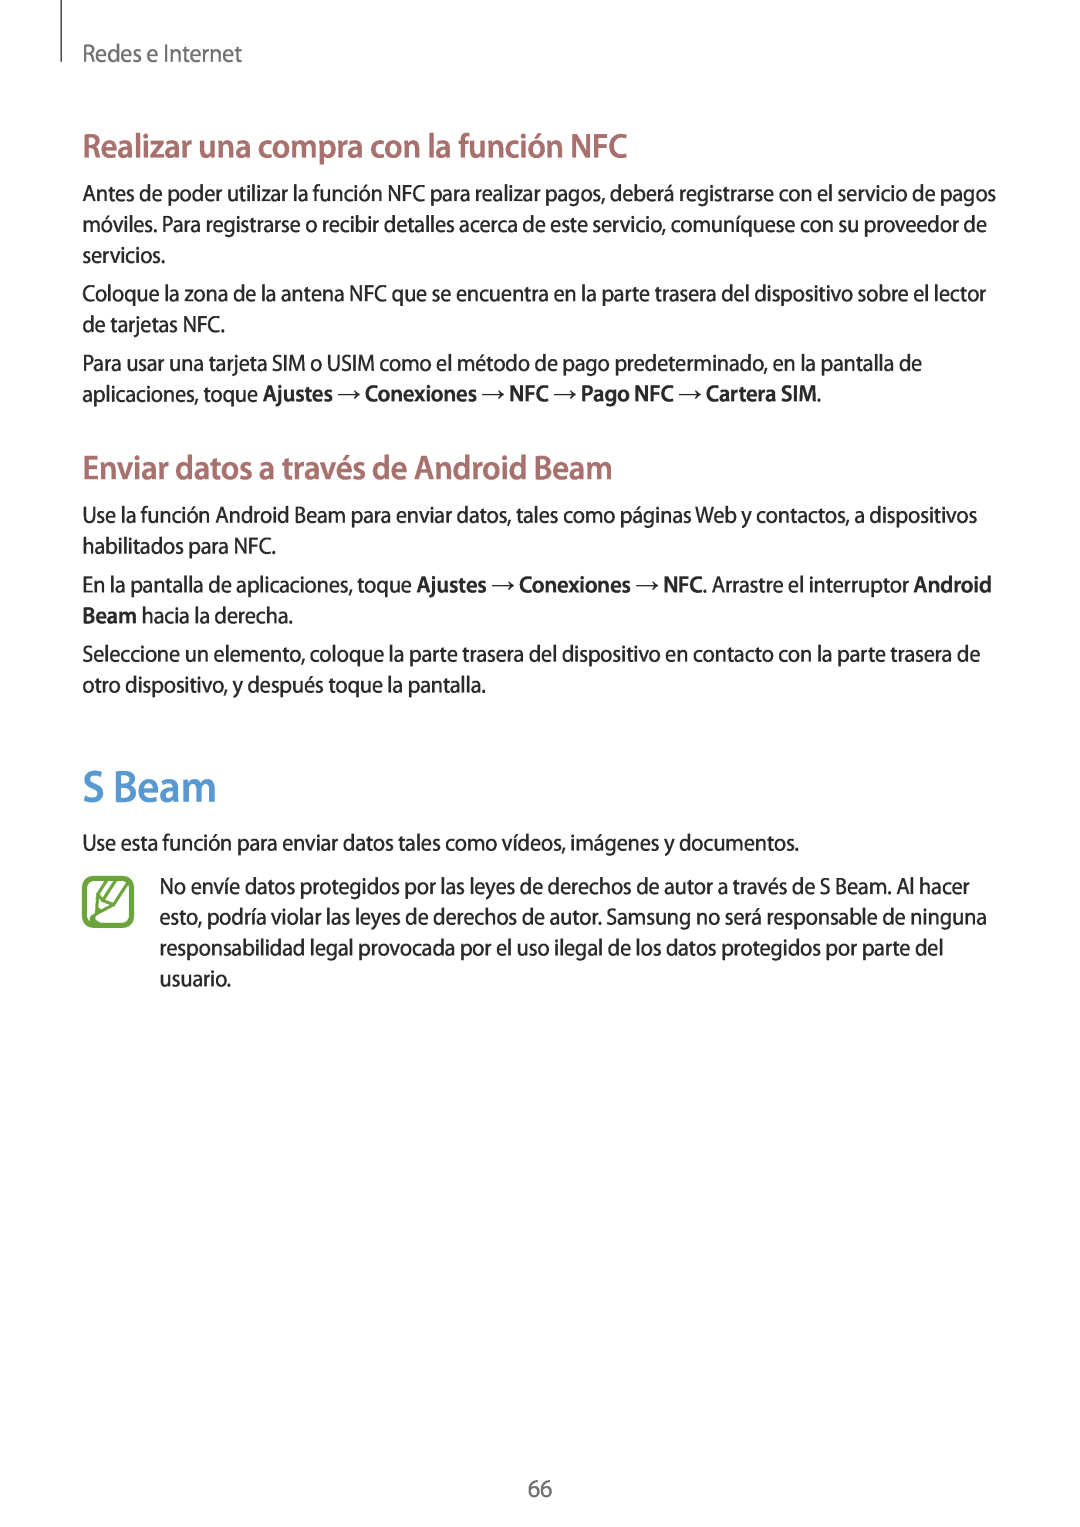 Samsung GT-I9195ZIAPHE manual S Beam, Realizar una compra con la función NFC, Enviar datos a través de Android Beam 